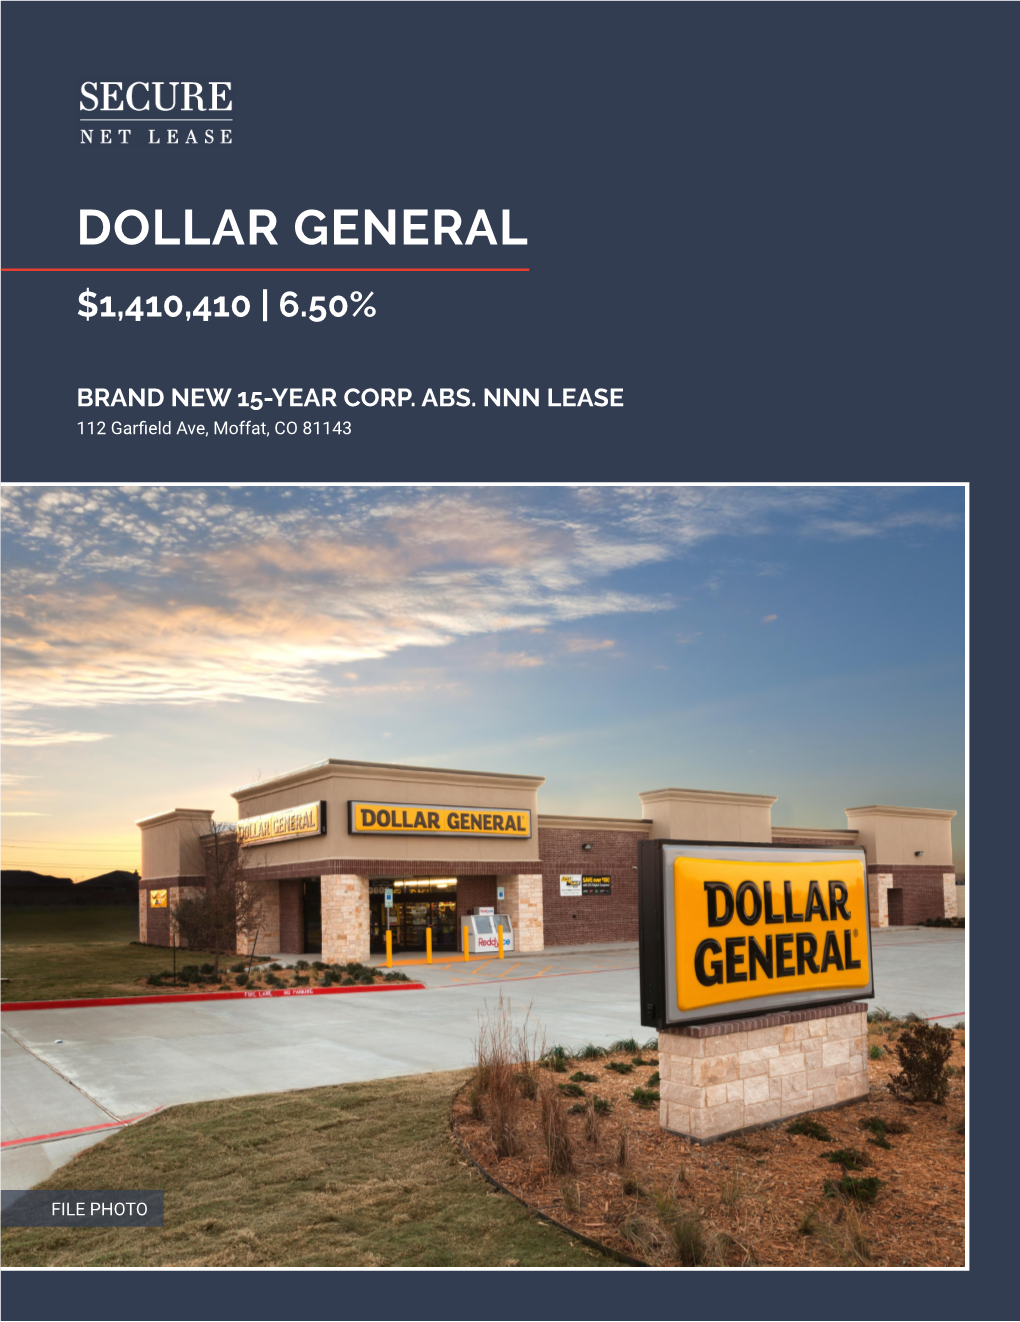 Dollar General $1,410,410 | 6.50%